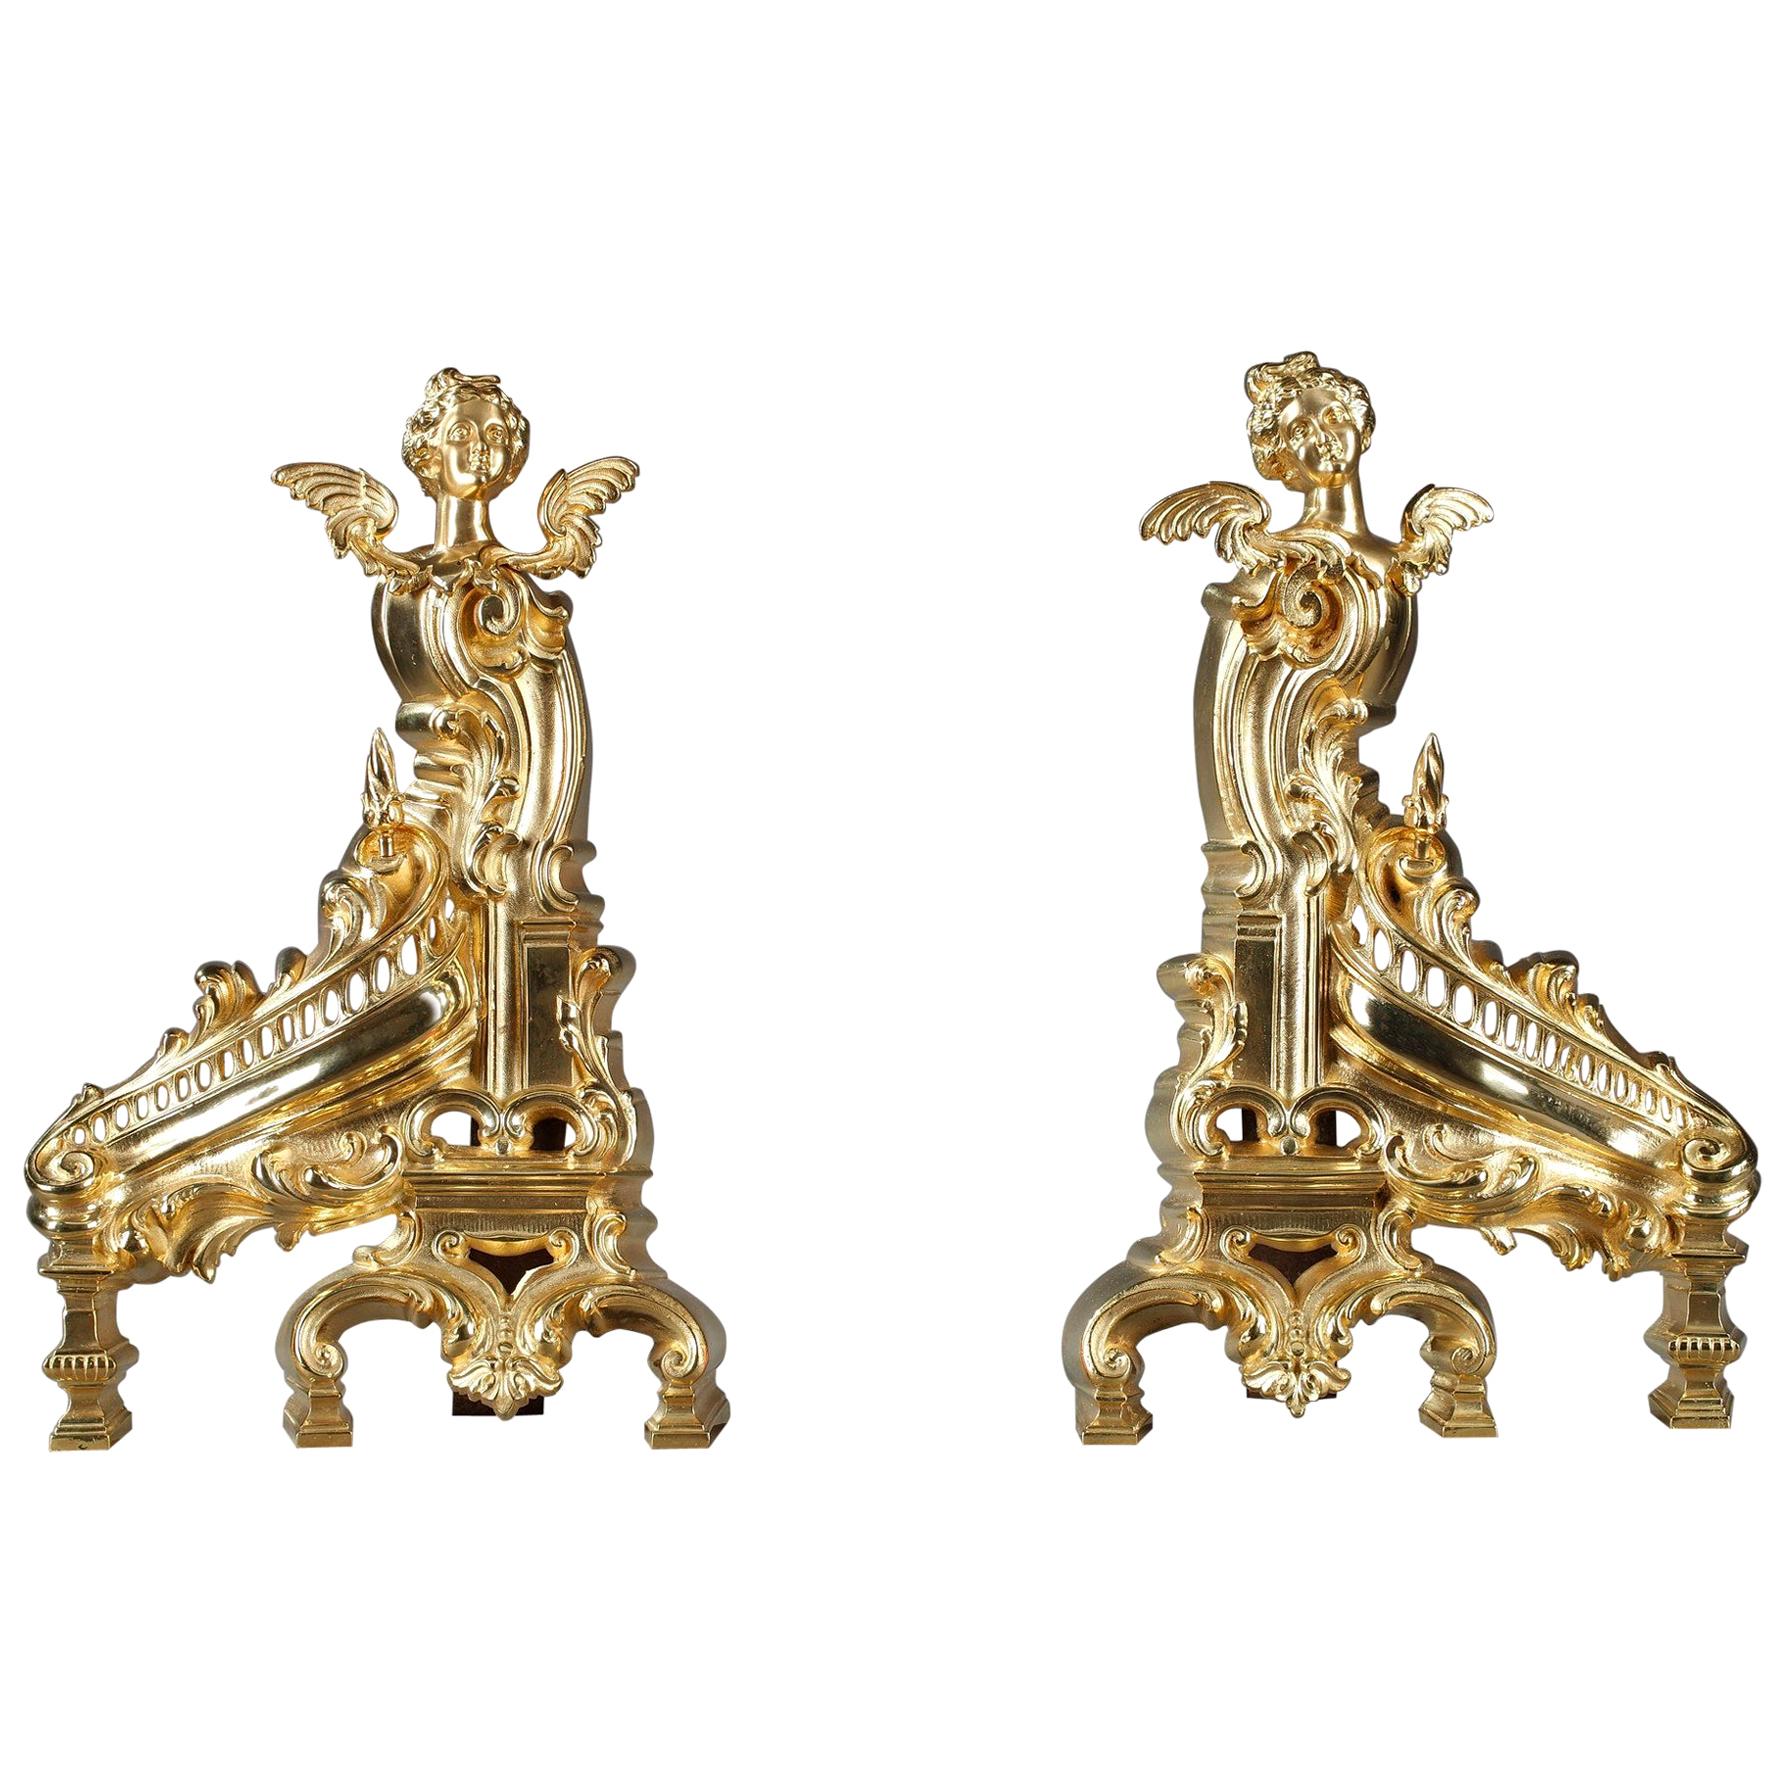 Napoleon III Rocaille-Style Ormolu Bronze Fireplace Andirons For Sale